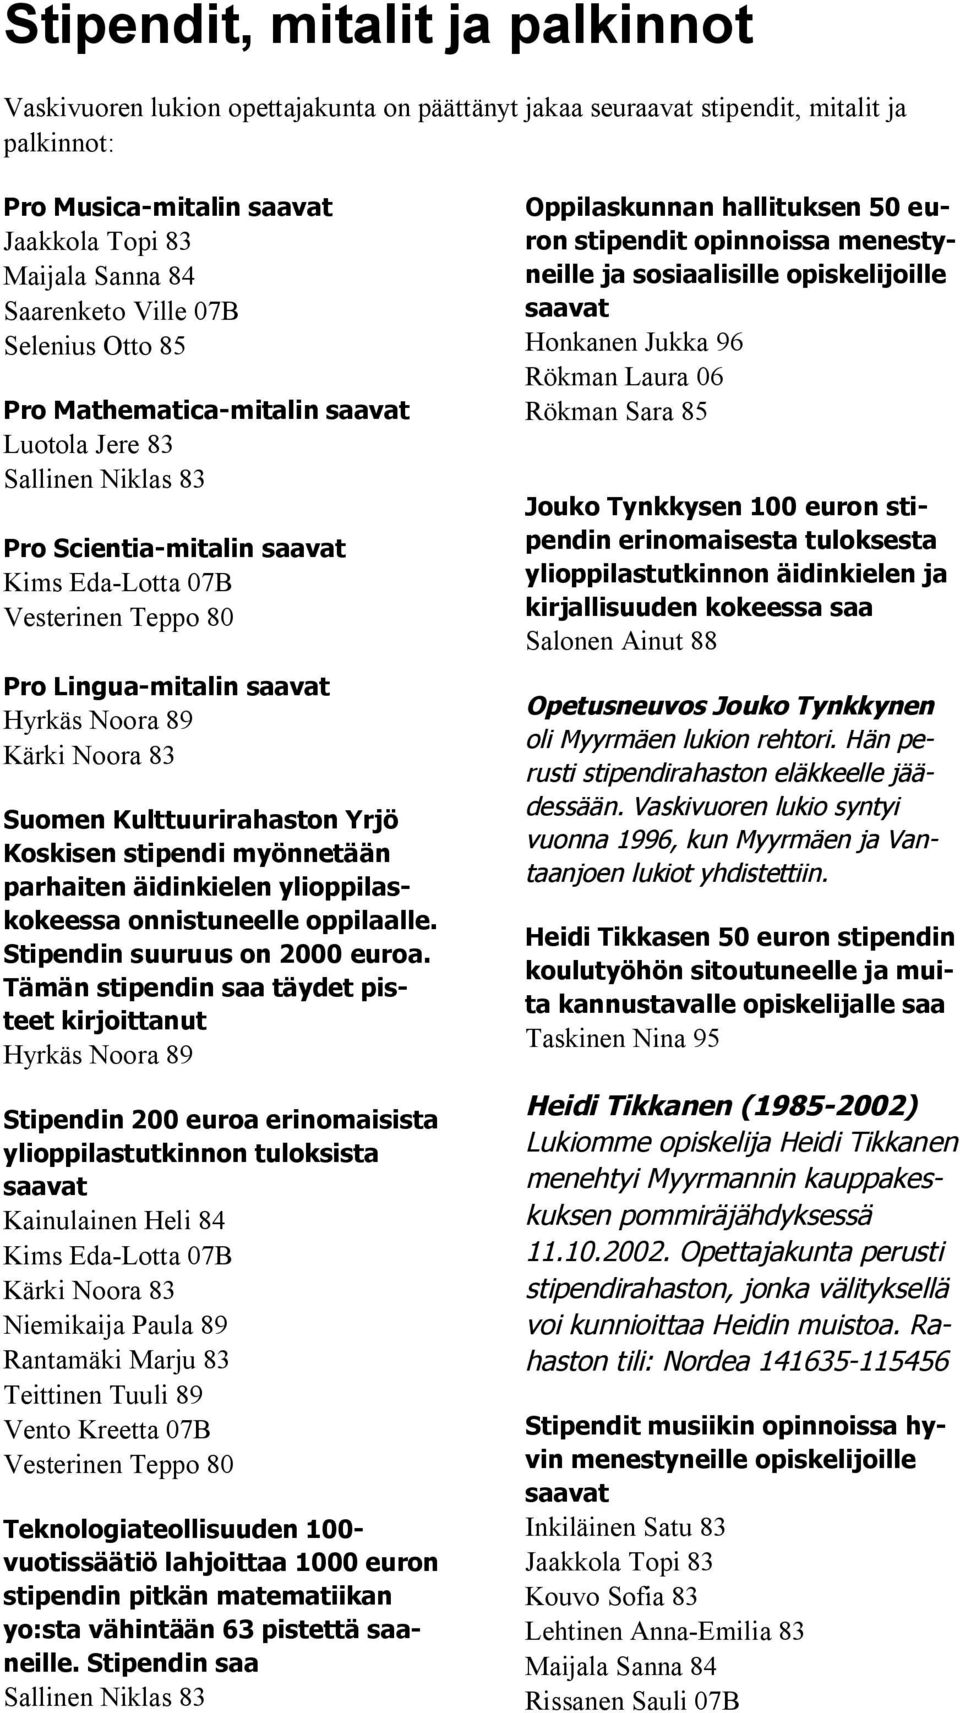 Kulttuurirahaston Yrjö Koskisen stipendi myönnetään parhaiten äidinkielen ylioppilaskokeessa onnistuneelle oppilaalle. Stipendin suuruus on 2000 euroa.